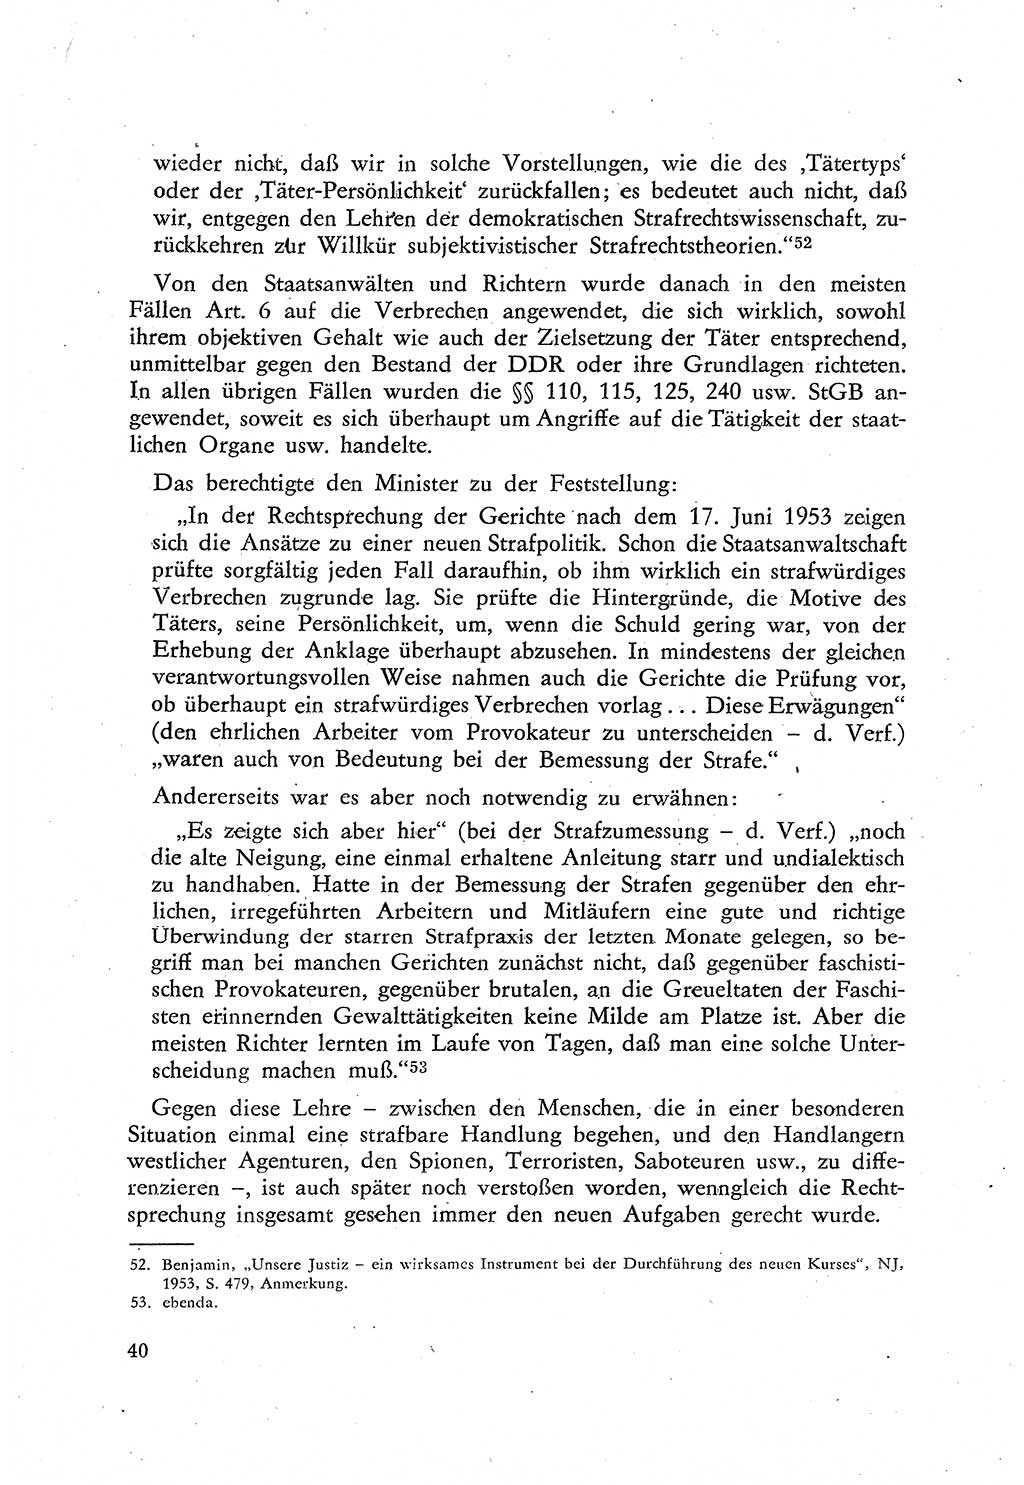 Beiträge zum Strafrecht [Deutsche Demokratische Republik (DDR)], Staatsverbrechen 1959, Seite 40 (Beitr. Strafr. DDR St.-Verbr. 1959, S. 40)